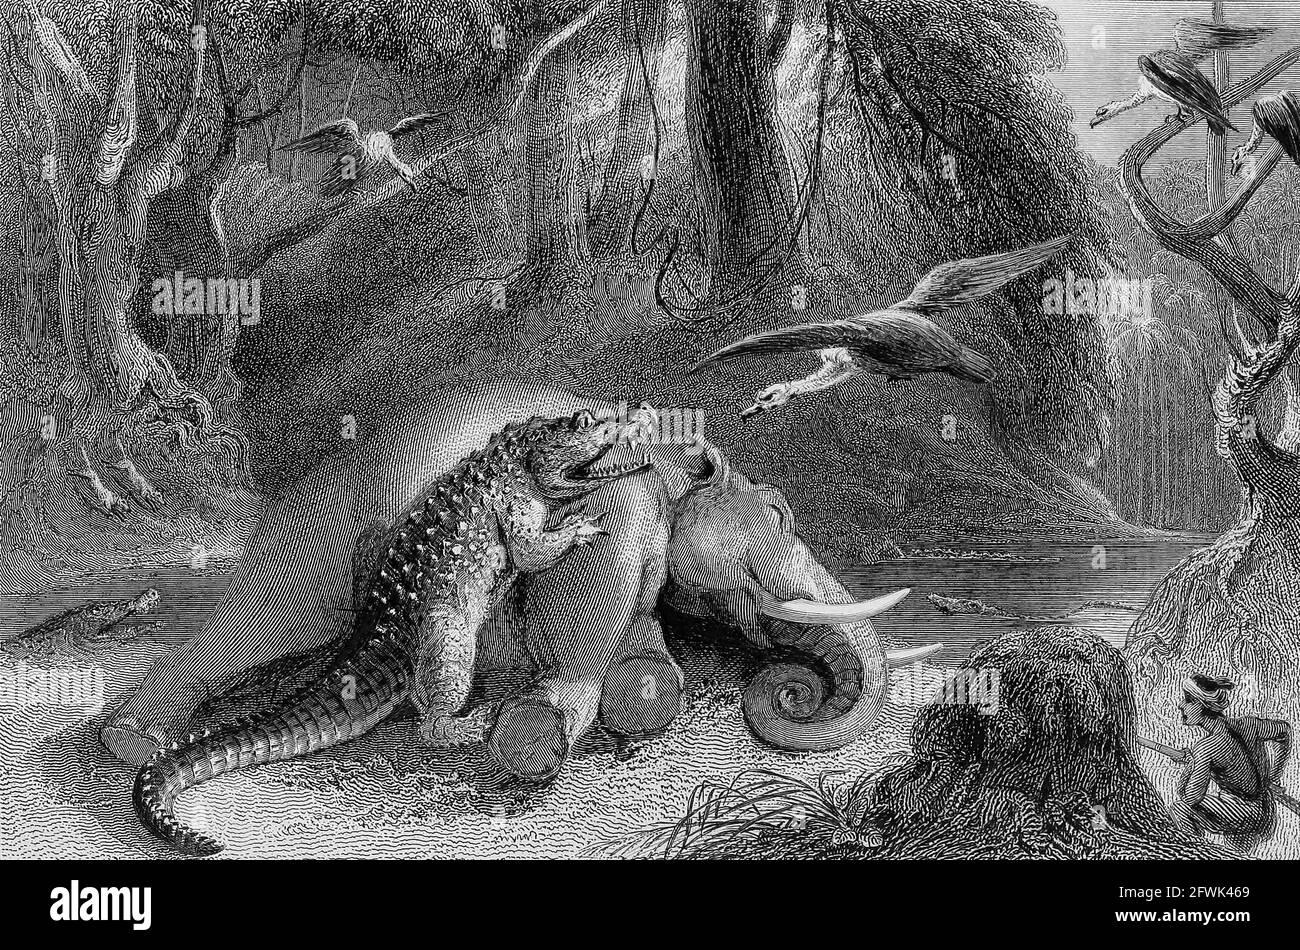 Alligator und toter ElefantAus dem Buch "The Oriental Annual, OR, Scenes in India" von The Rev. Hobart Caunter Herausgegeben von Edward Bull, London 1834 Stiche nach Zeichnungen von William Daniell Stockfoto